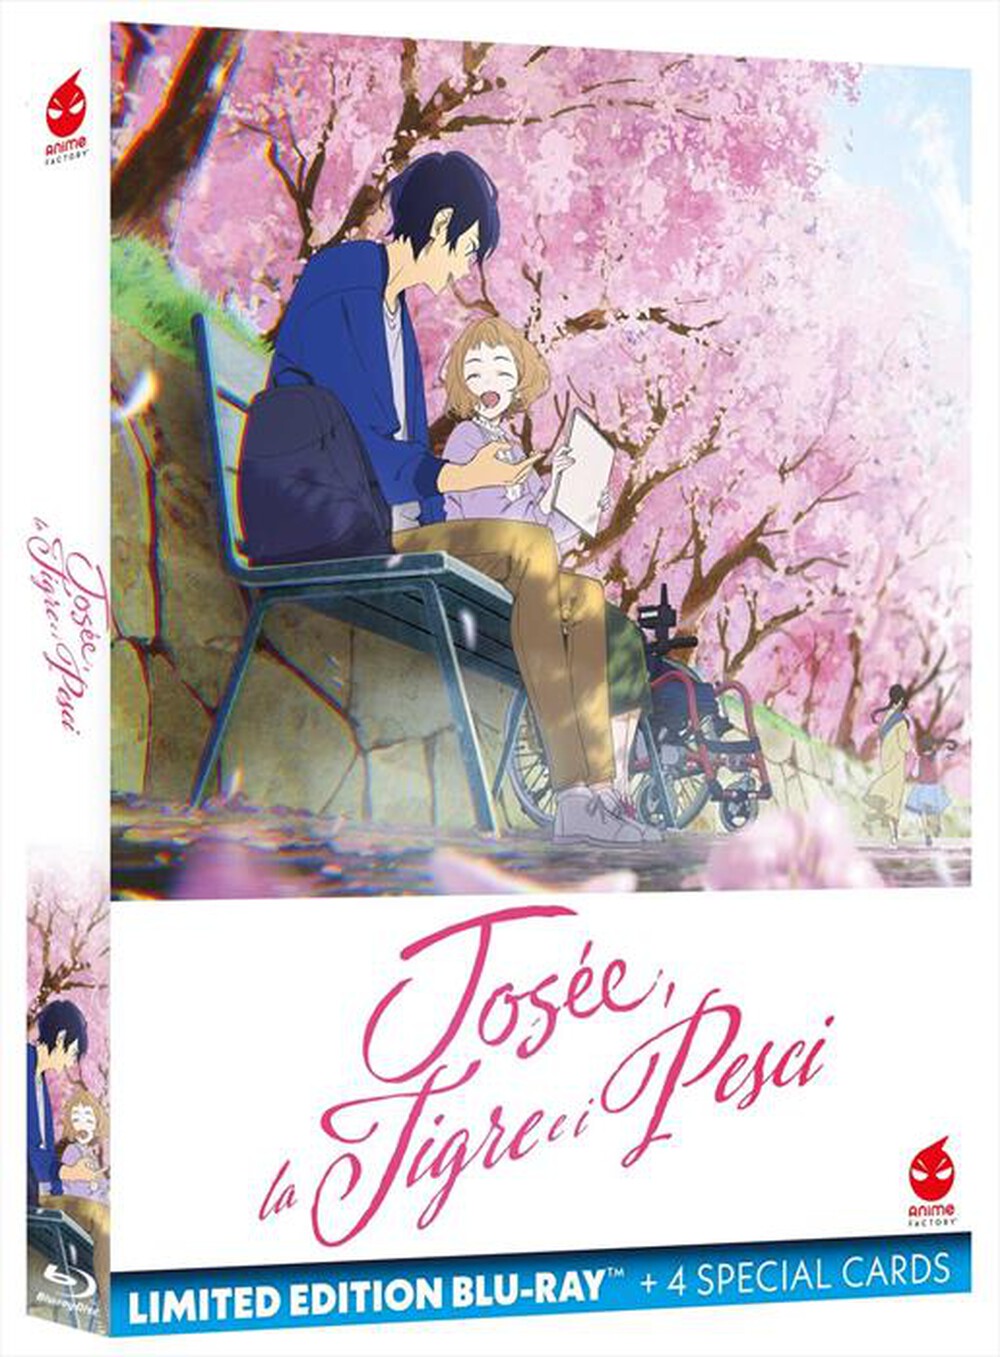 "Anime Factory - Josee, La Tigre E I Pesci (Blu-Ray+4 Cards) (Ltd"